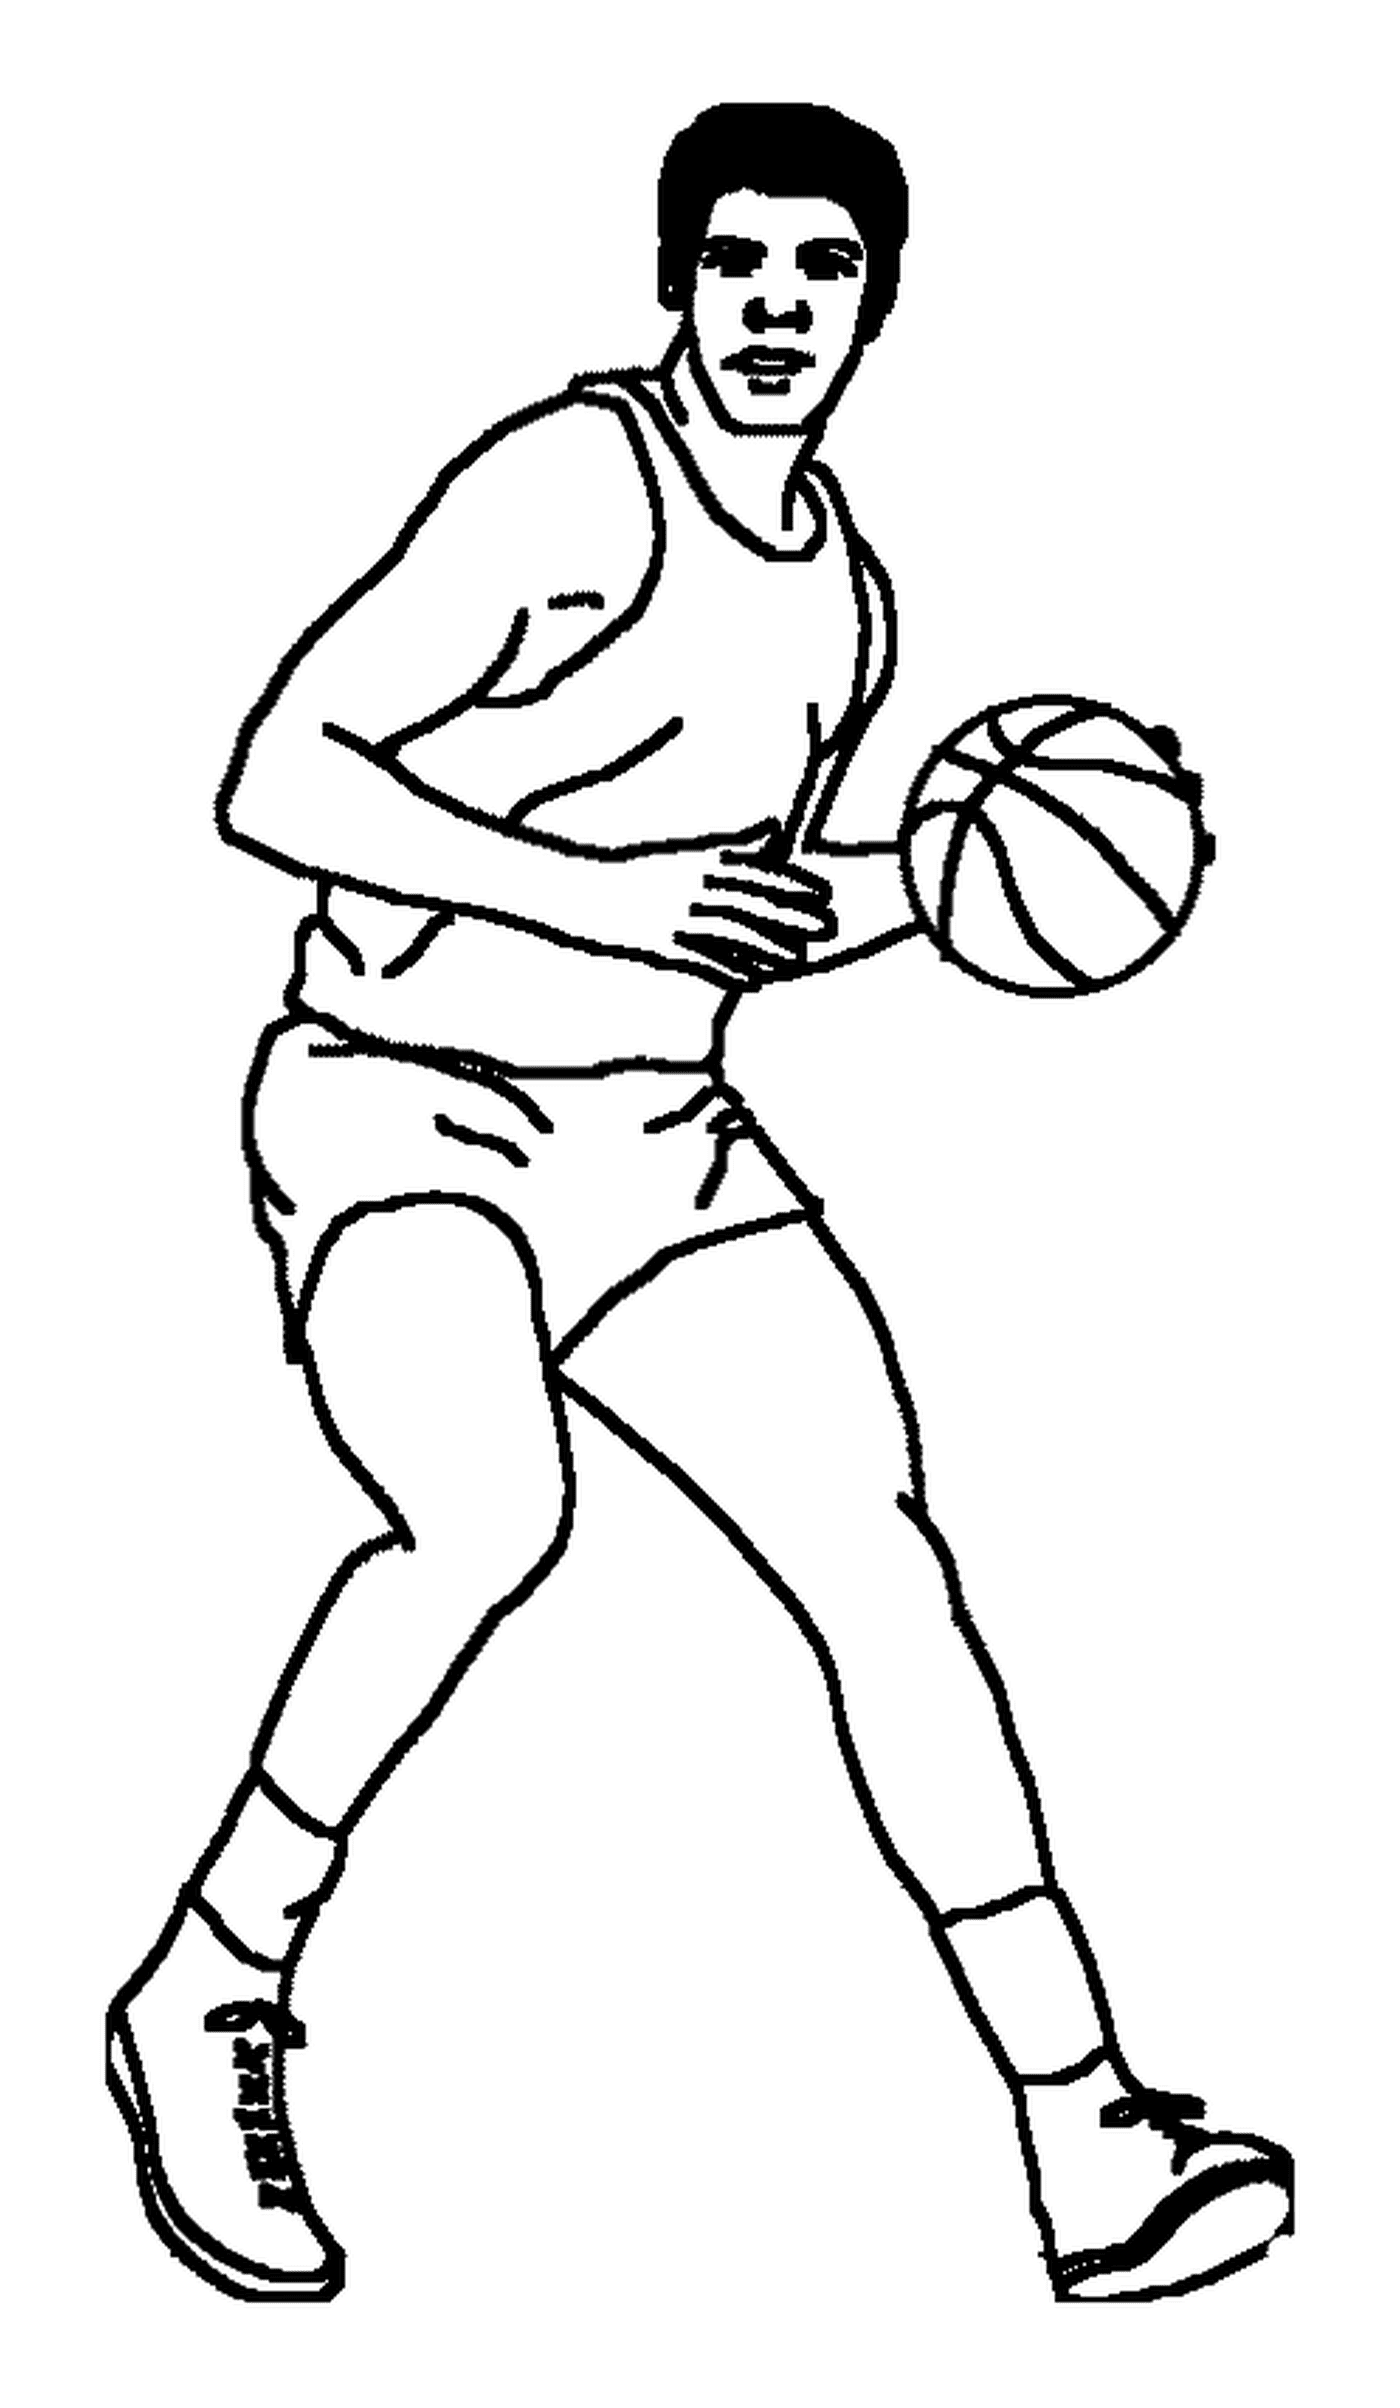  Ein Basketballspieler mit einem Ball 